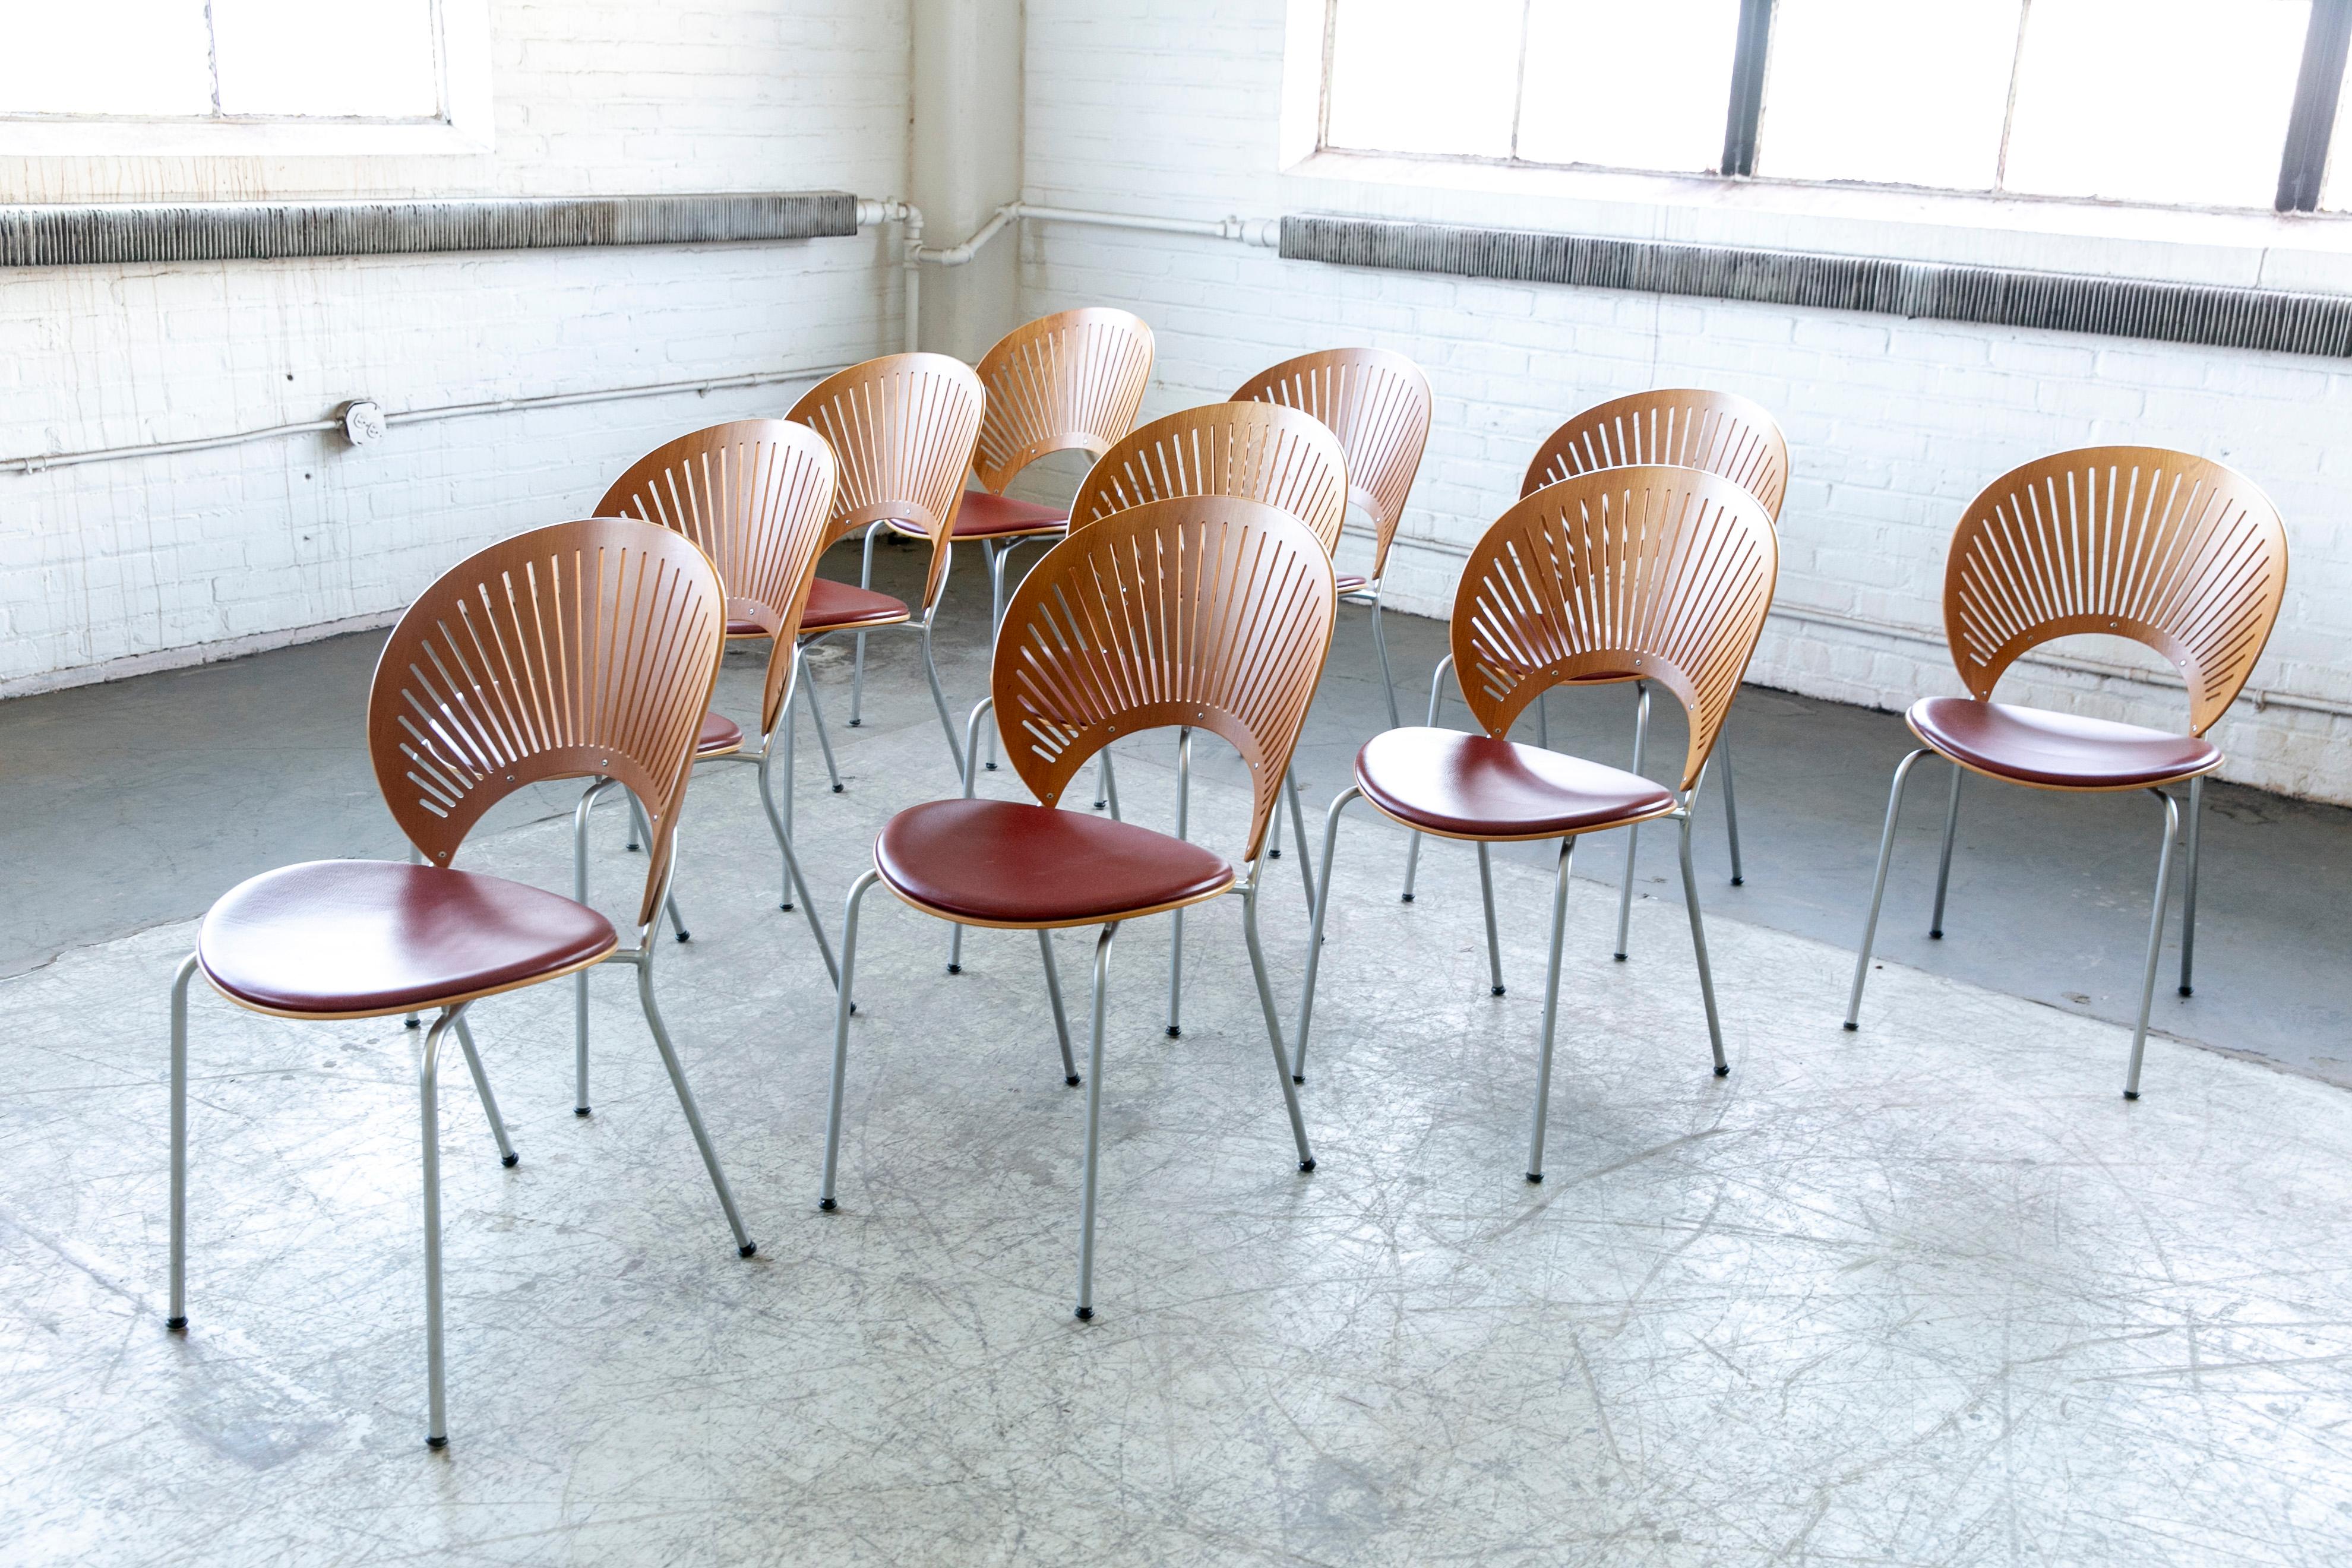 Ensemble de 10 chaises de salle à manger modèle trinidad avec des sièges en cuir rouge rouille probablement fabriqués dans les années 2000 car la chaise est toujours en production et fabriquée par Fredericia Mobler et l'un des principaux fabricants